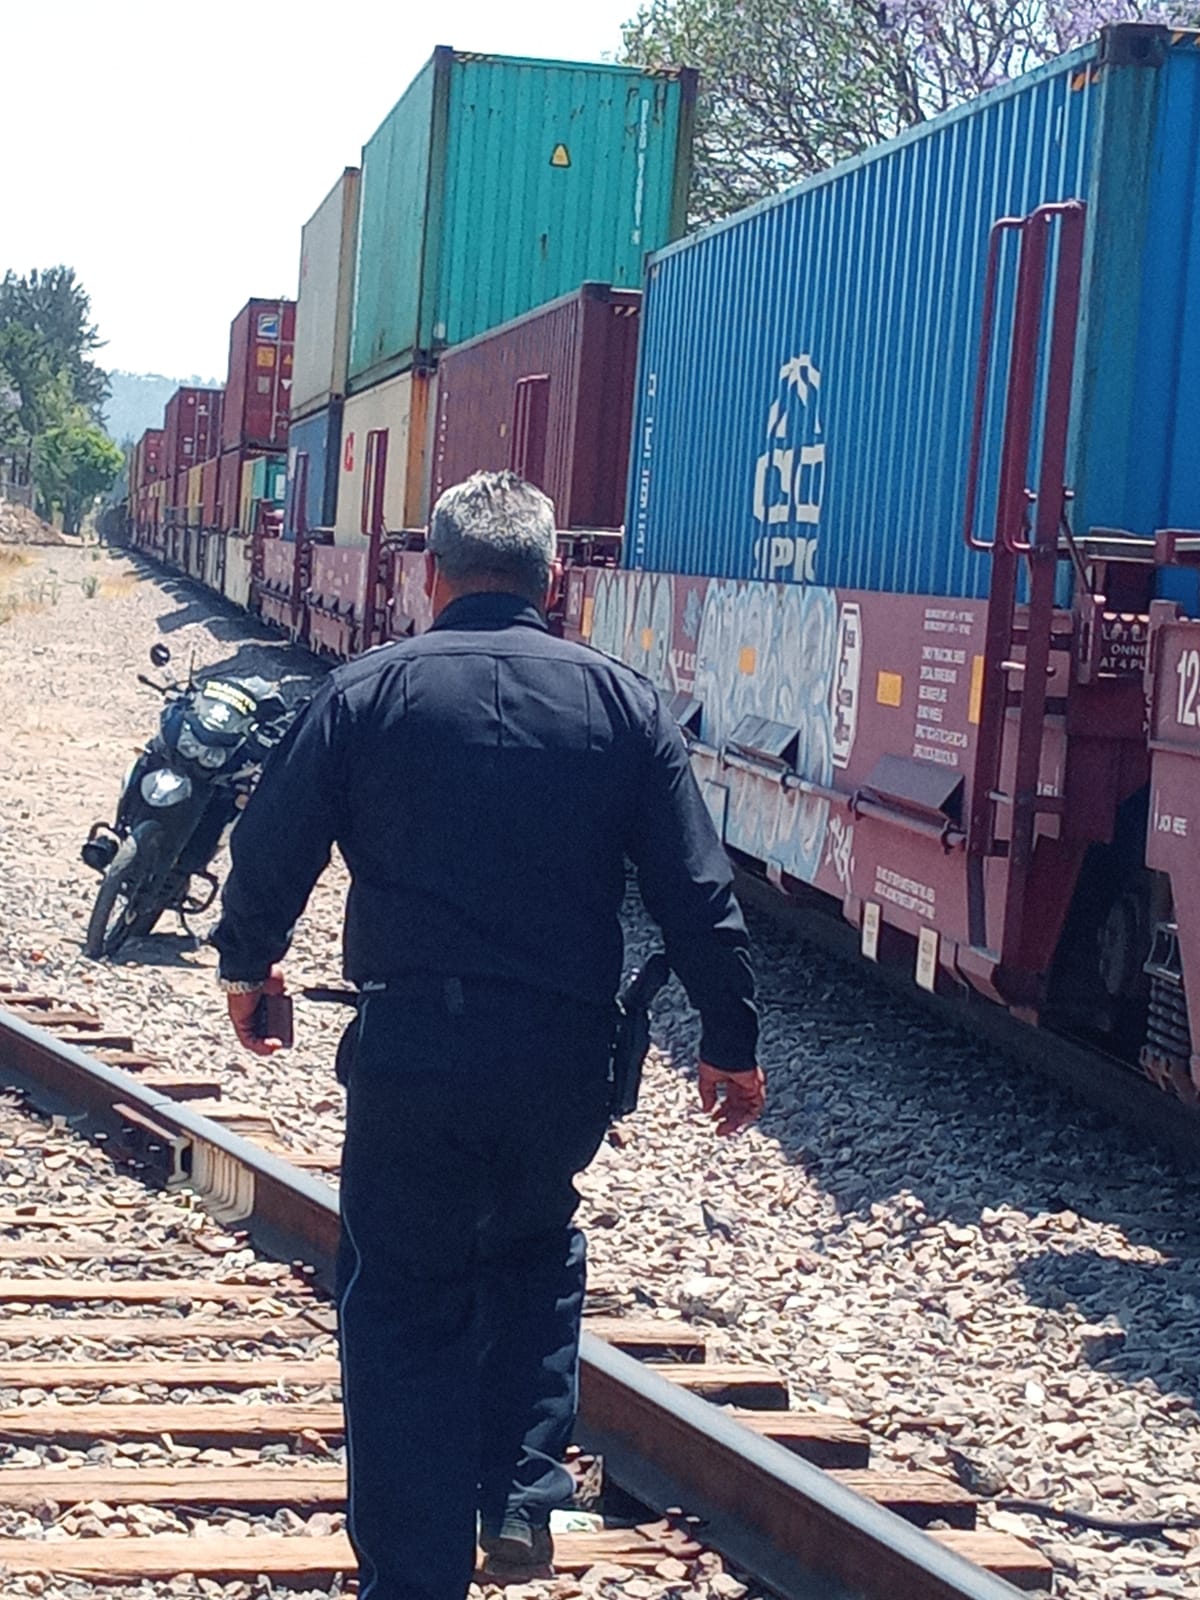 Tren sufre una avería y queda atravesado en la zona sur de Morelia